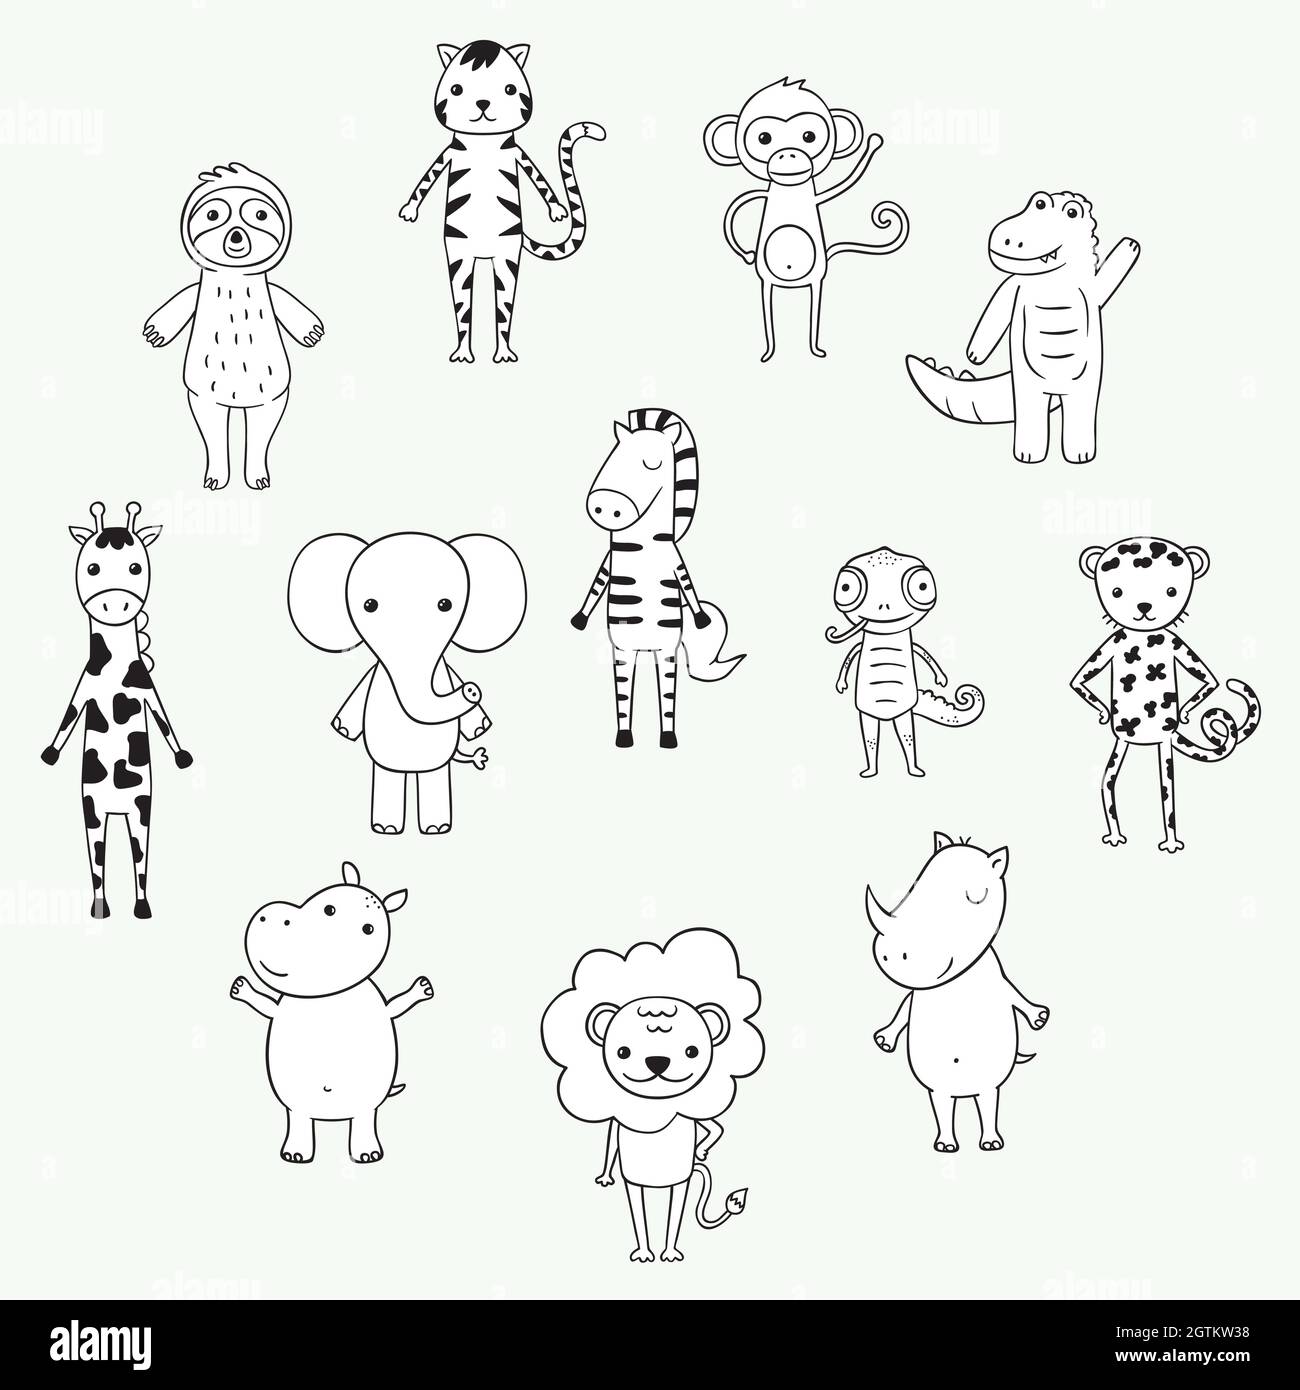 Lindos animales de la selva y safari. Personajes de dibujos animados del zoológico dibujados a mano. Elefante, león, perezoso, mono, cebra, jirafa. Blanco y negro. Ilustración del Vector